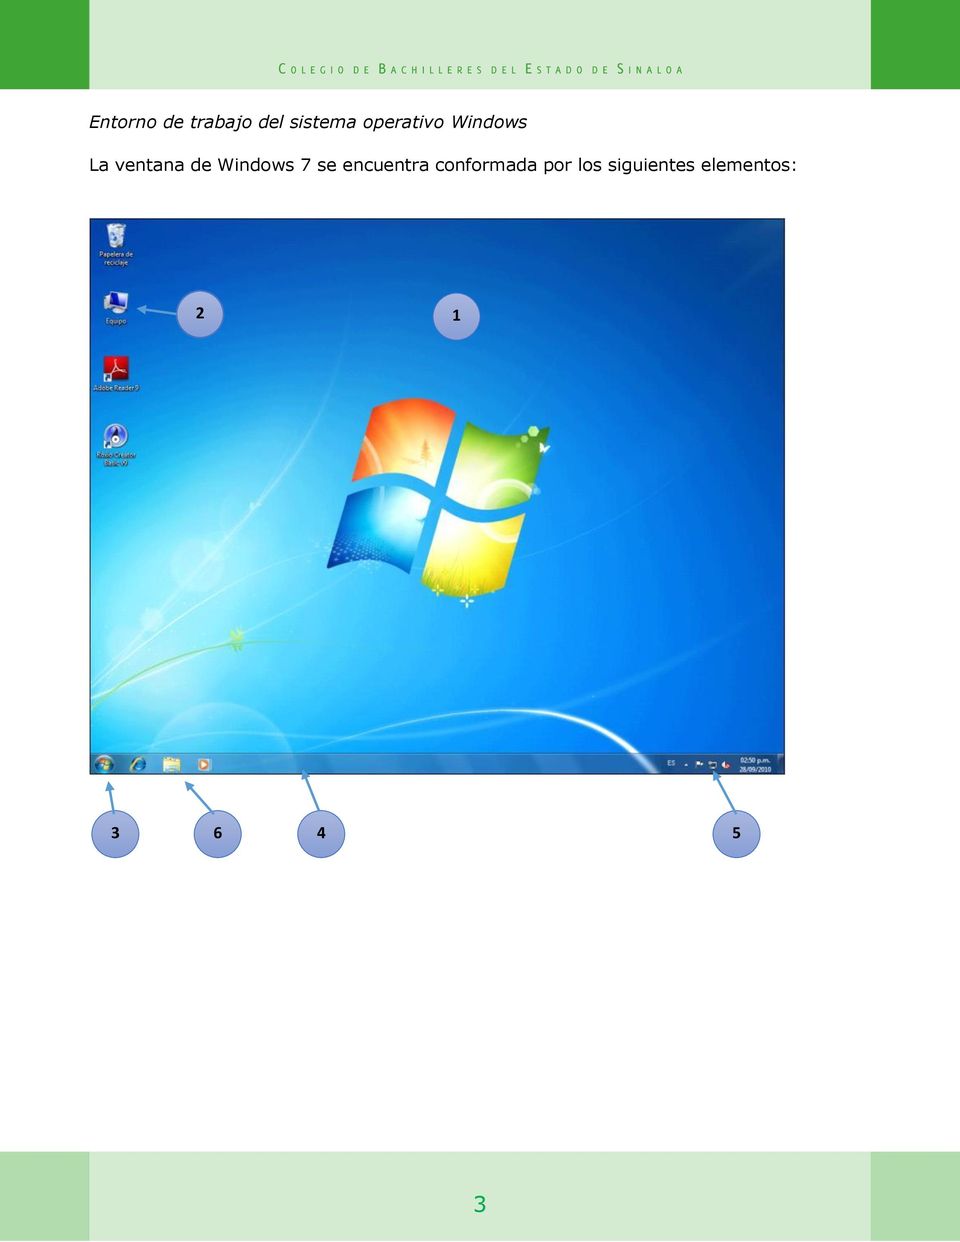 Windows 7 se encuentra conformada